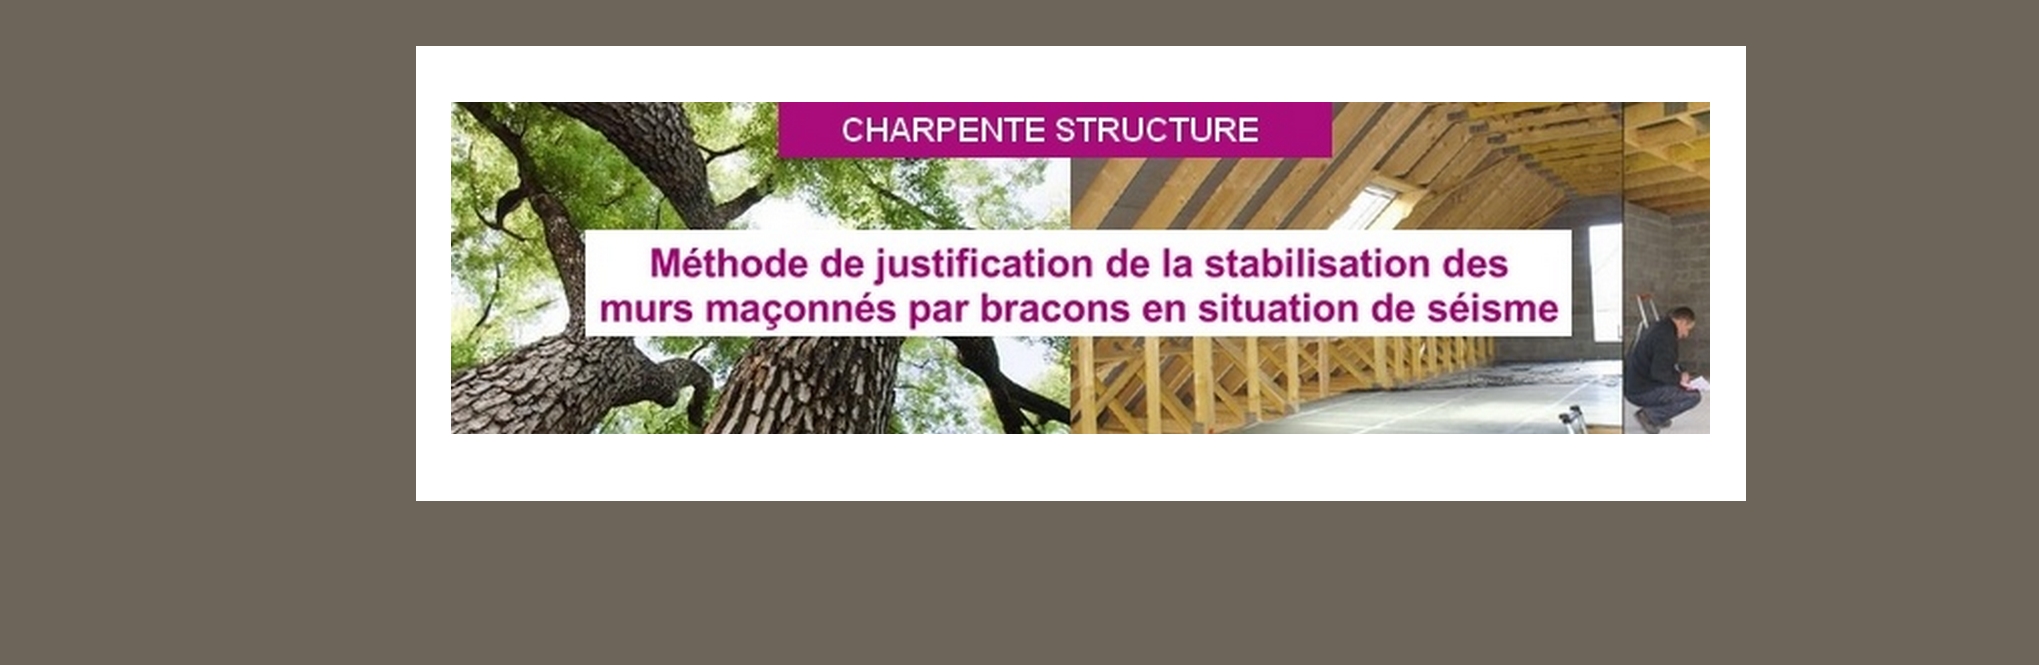 Méthode de justification de la stabilisation des murs maçonnés par bracons en situation de séisme